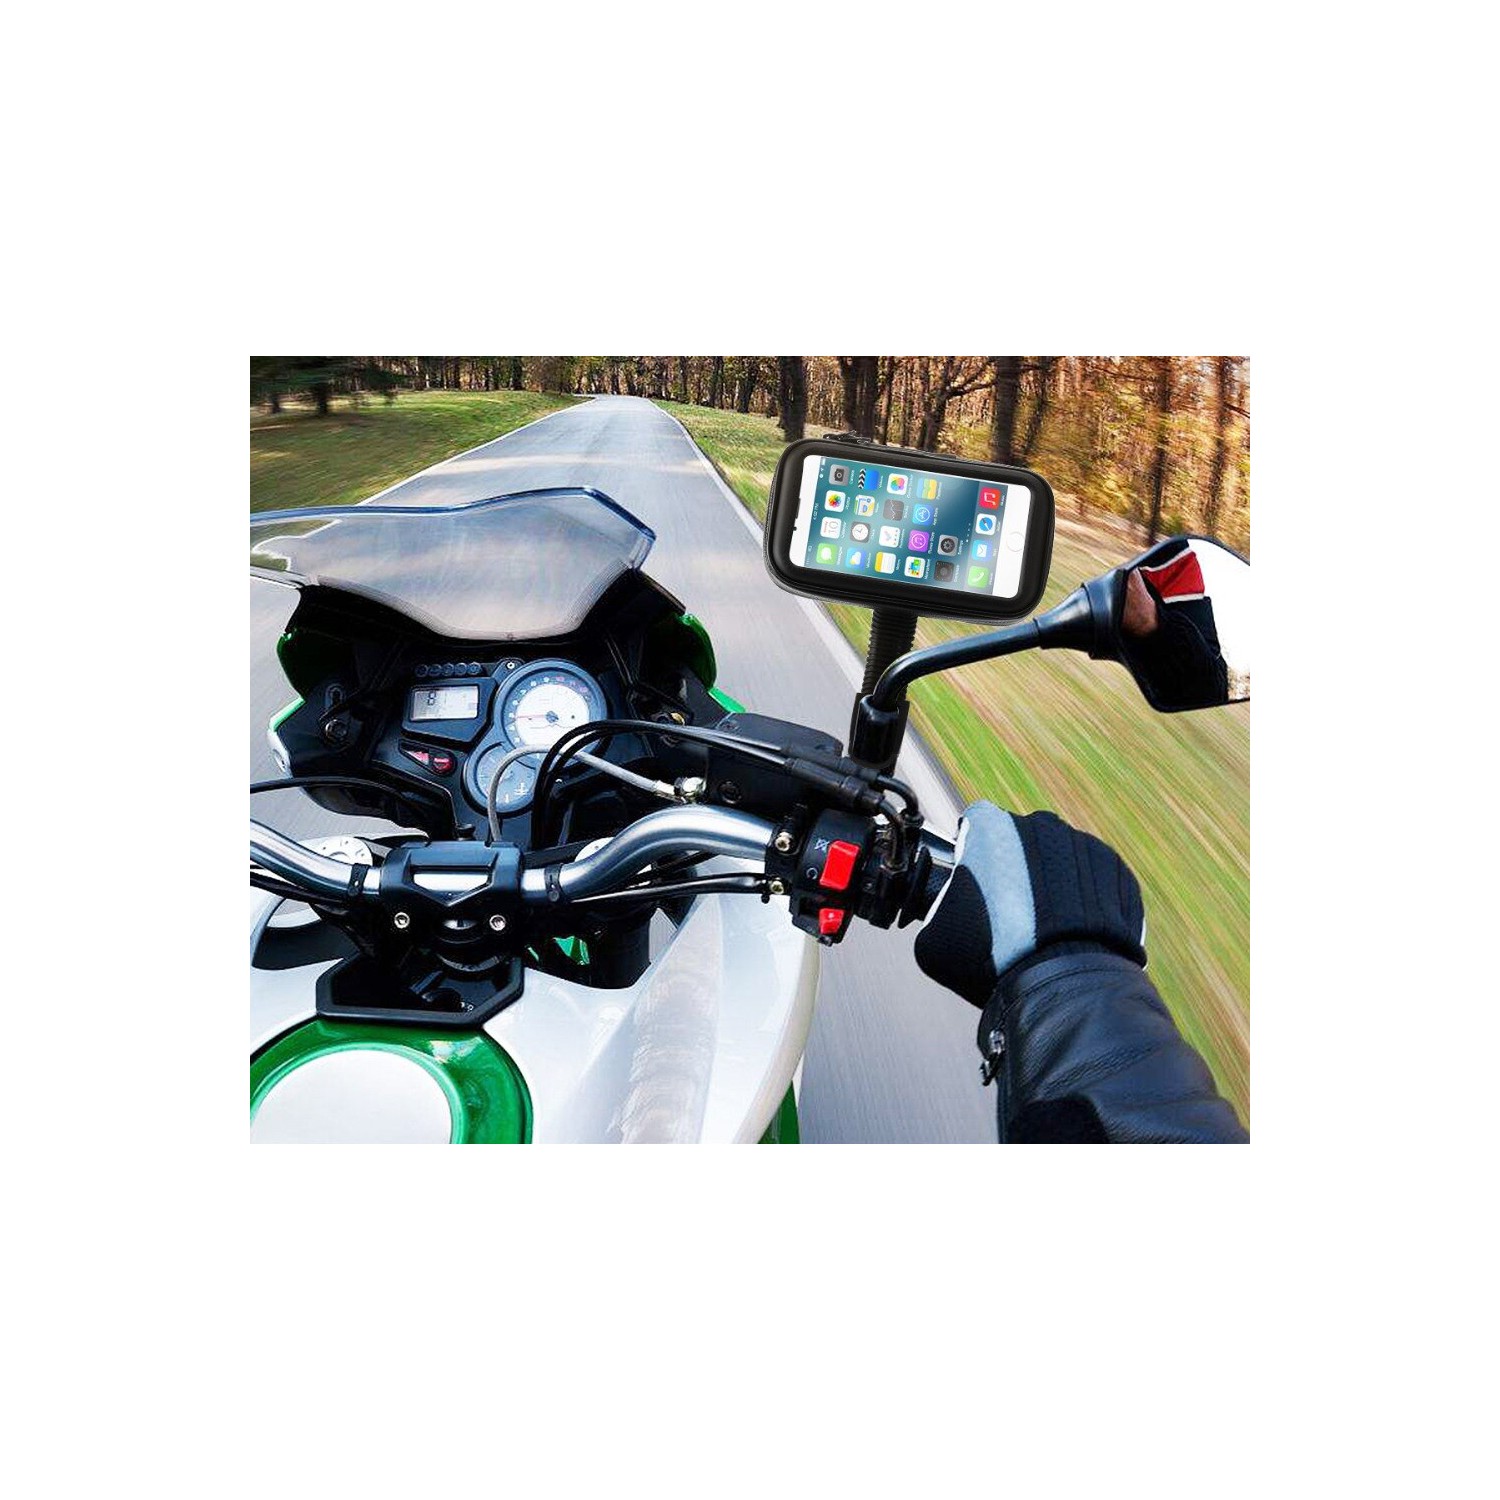 Motosiklet Ayna Kesimi  : Gidon Ayna Motosiklet Yedek Parça & Aksesuar Modelleri, Bakım Ürünleri, Lastikleri N11.cOm�dA!